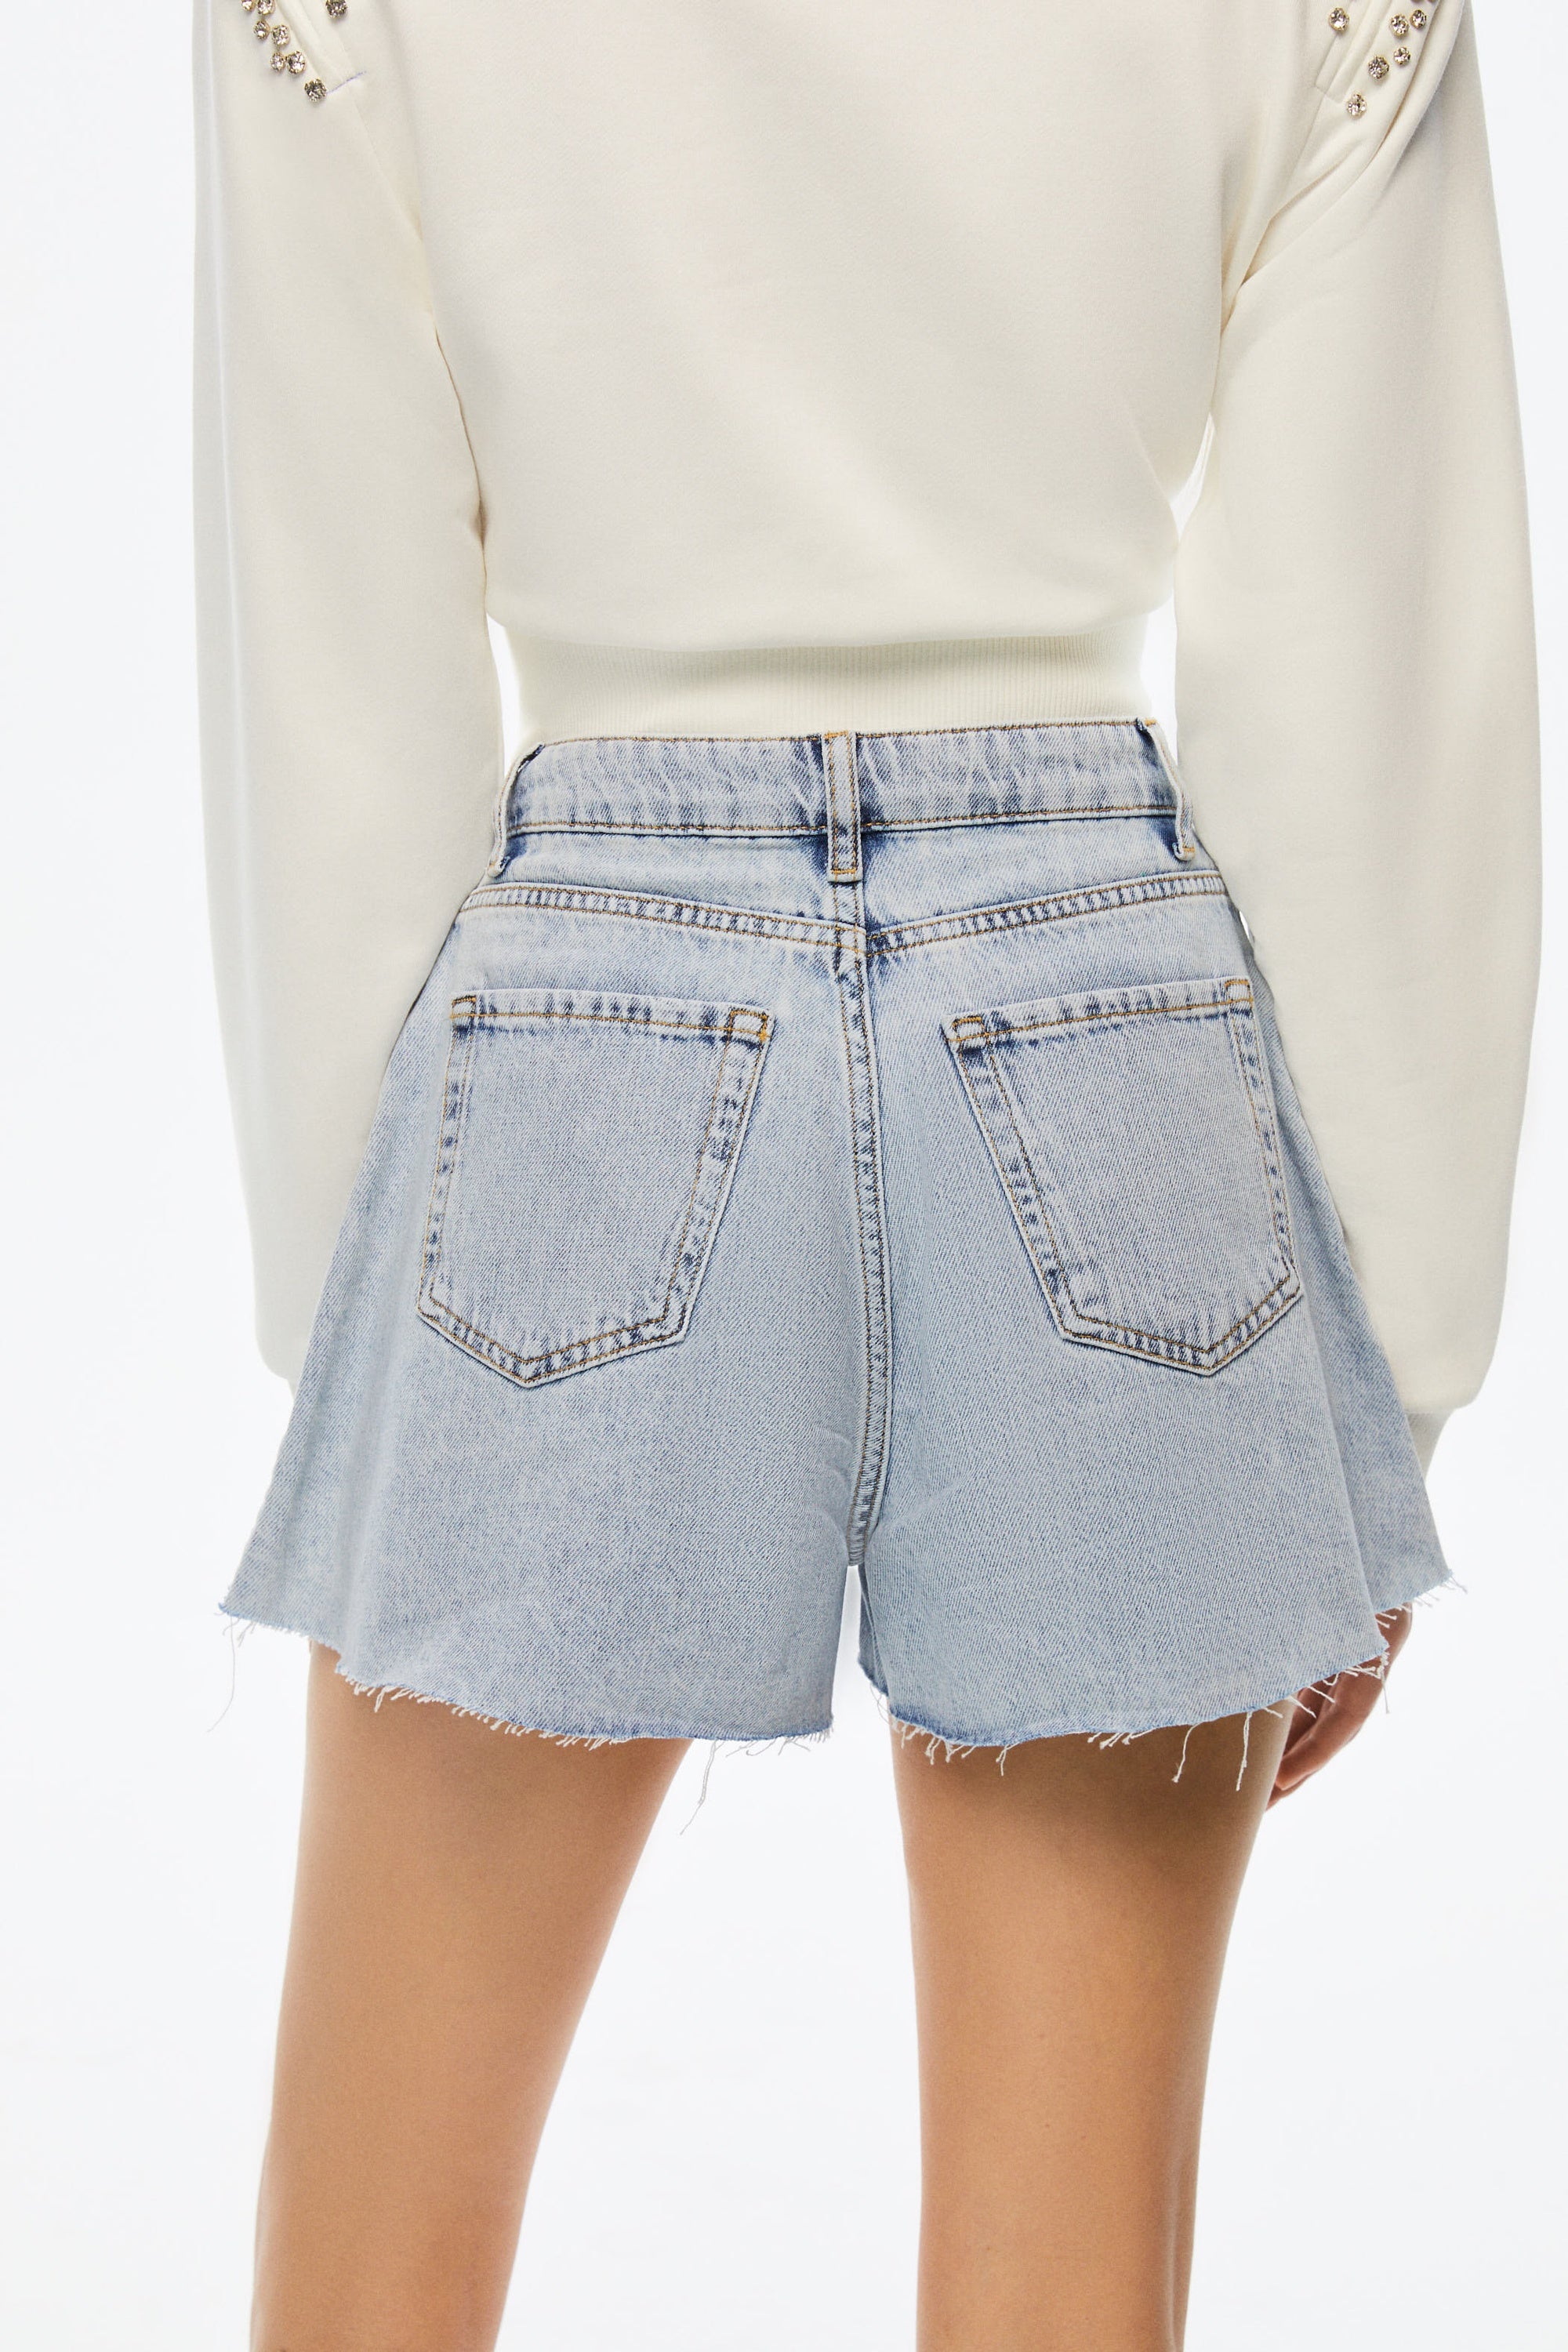 Embellished Jean Shorts